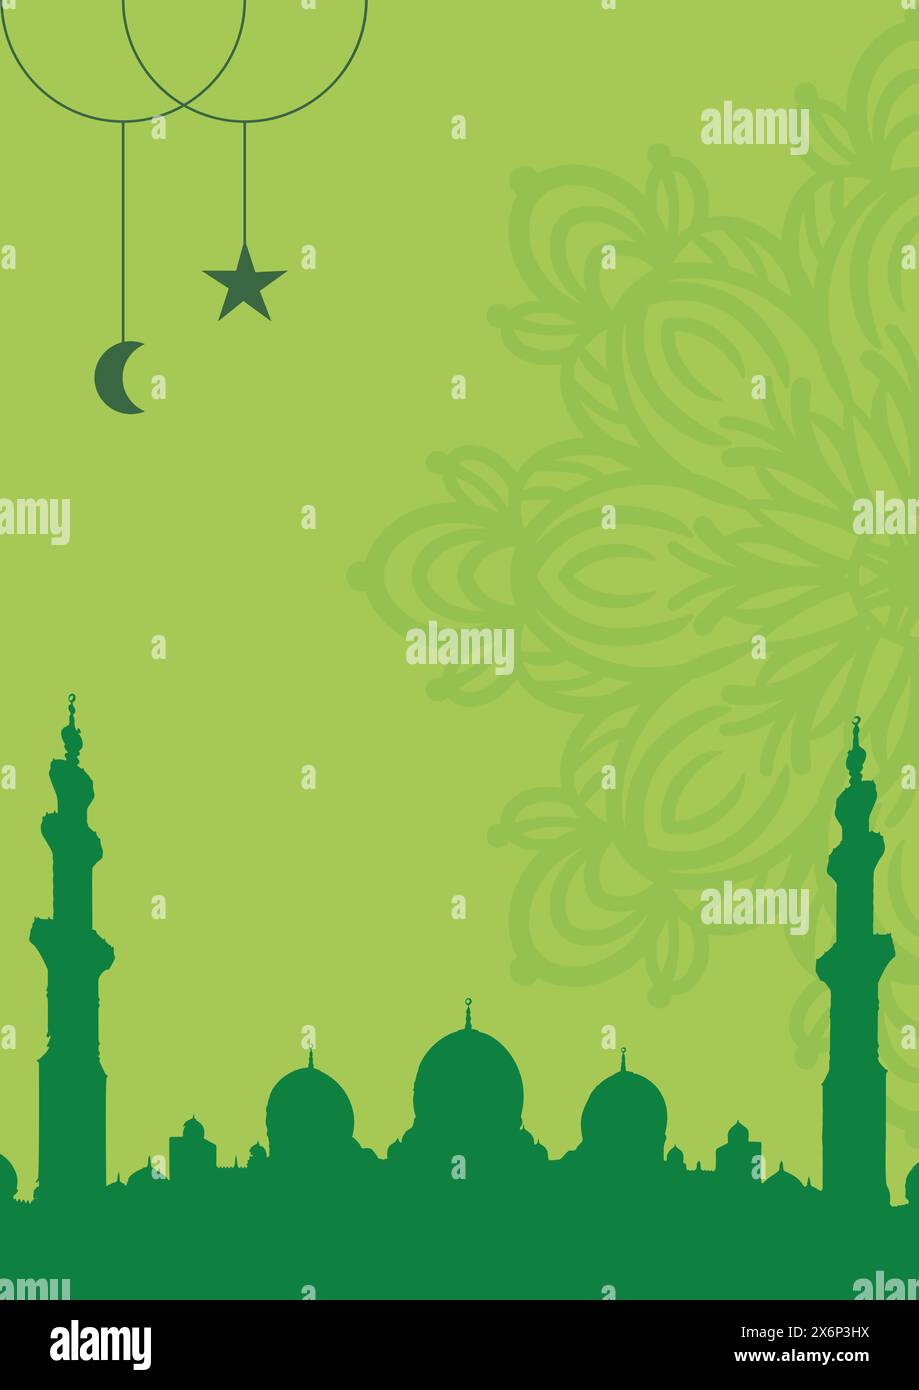 Anmutige Poster-Illustrationen mit islamischem Thema: Künstlerische Designs mit kultureller Eleganz für moderne Einrichtung Stock Vektor